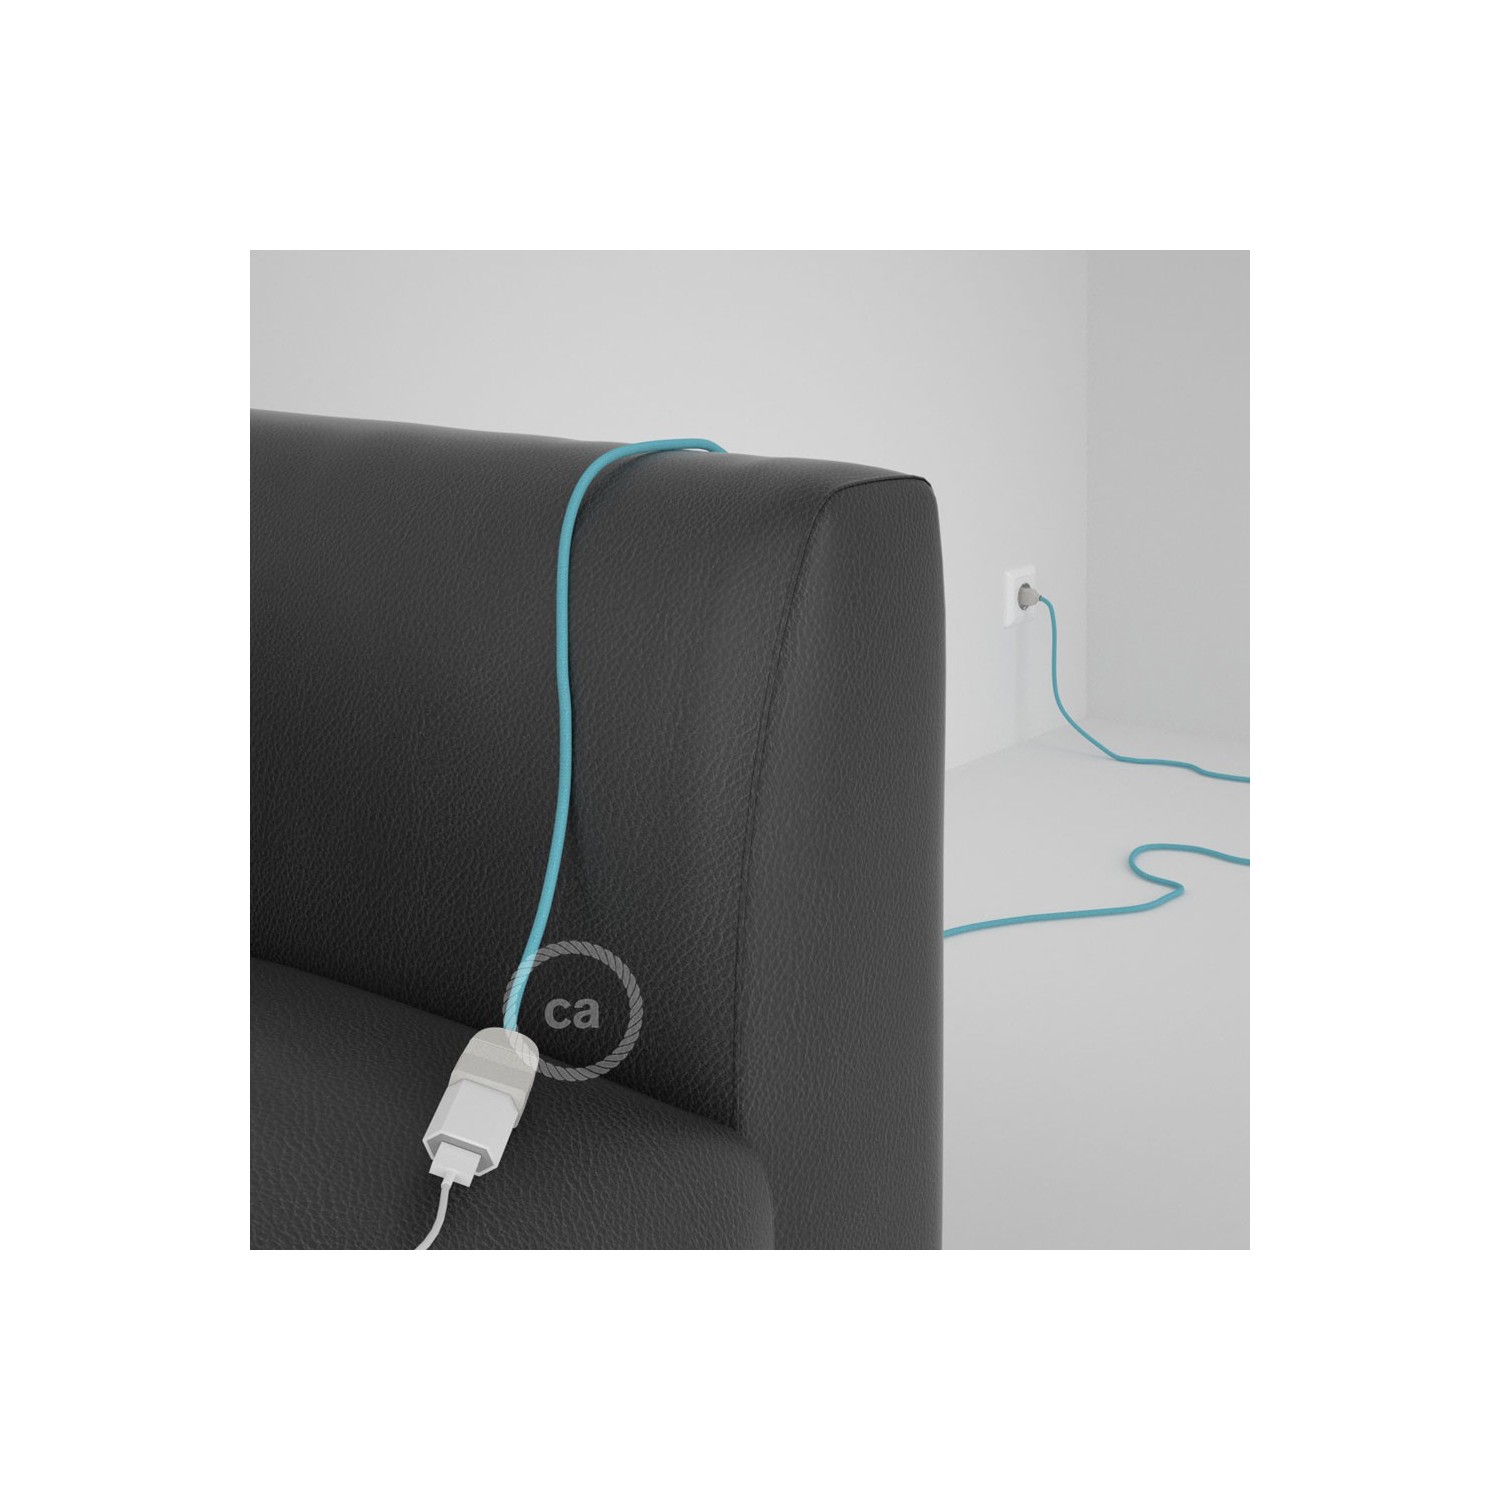 Podaljševalni kabel za napajanje (2P 10A) Baby blue rejon RM17 - Made in Italy